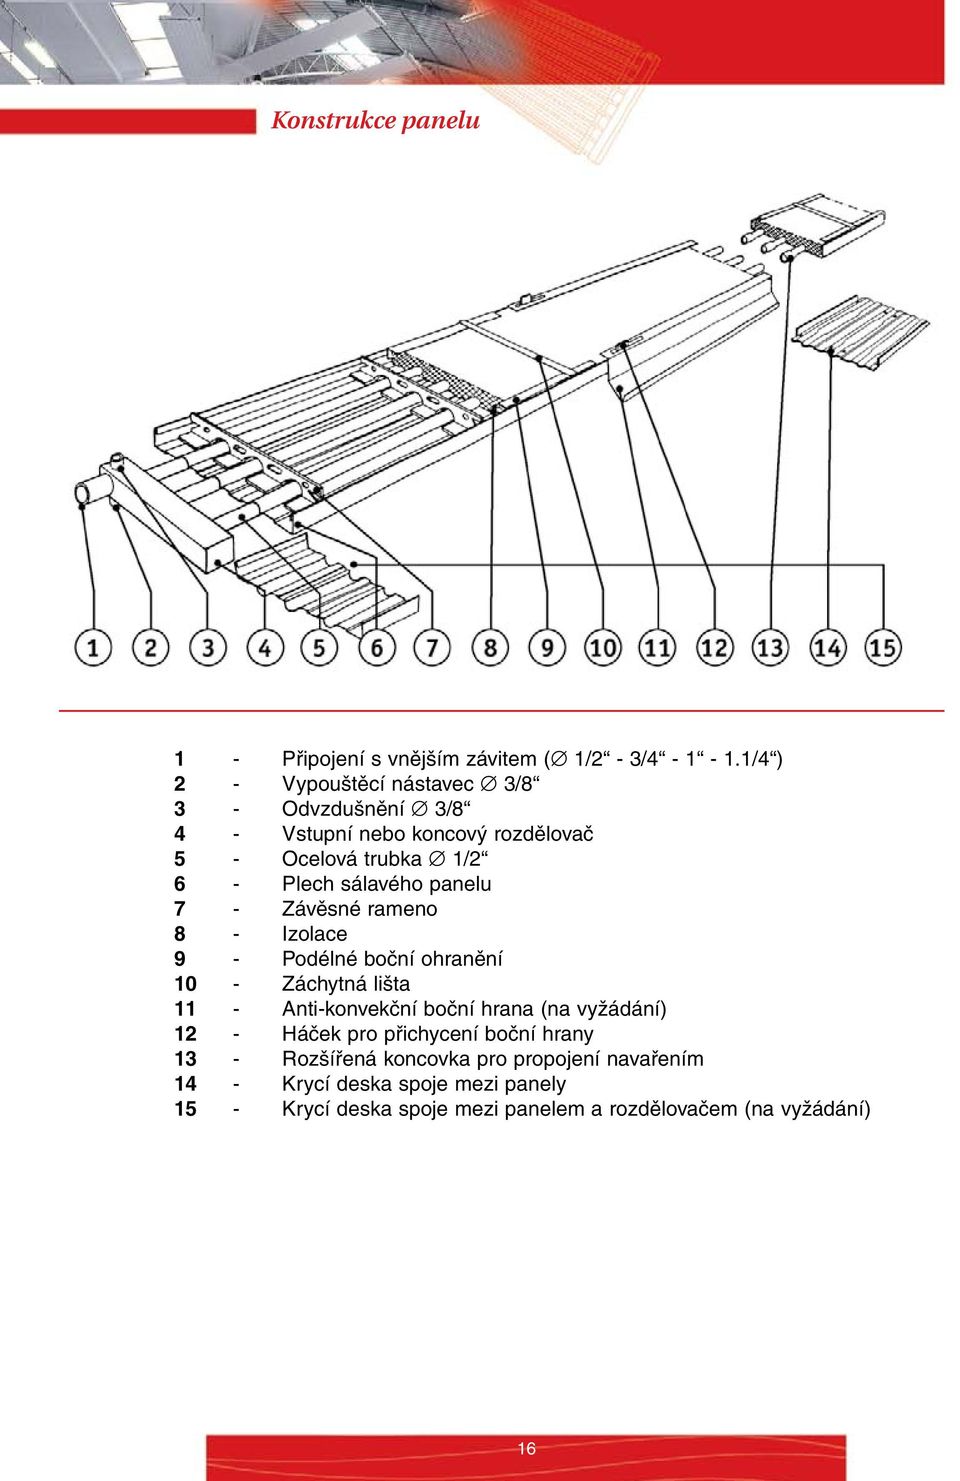 sálavého panelu 7 - Závěsné rameno 8 - Izolace 9 - Podélné boční ohranění 10 - Záchytná lišta 11 - Anti-konvekční boční hrana (na